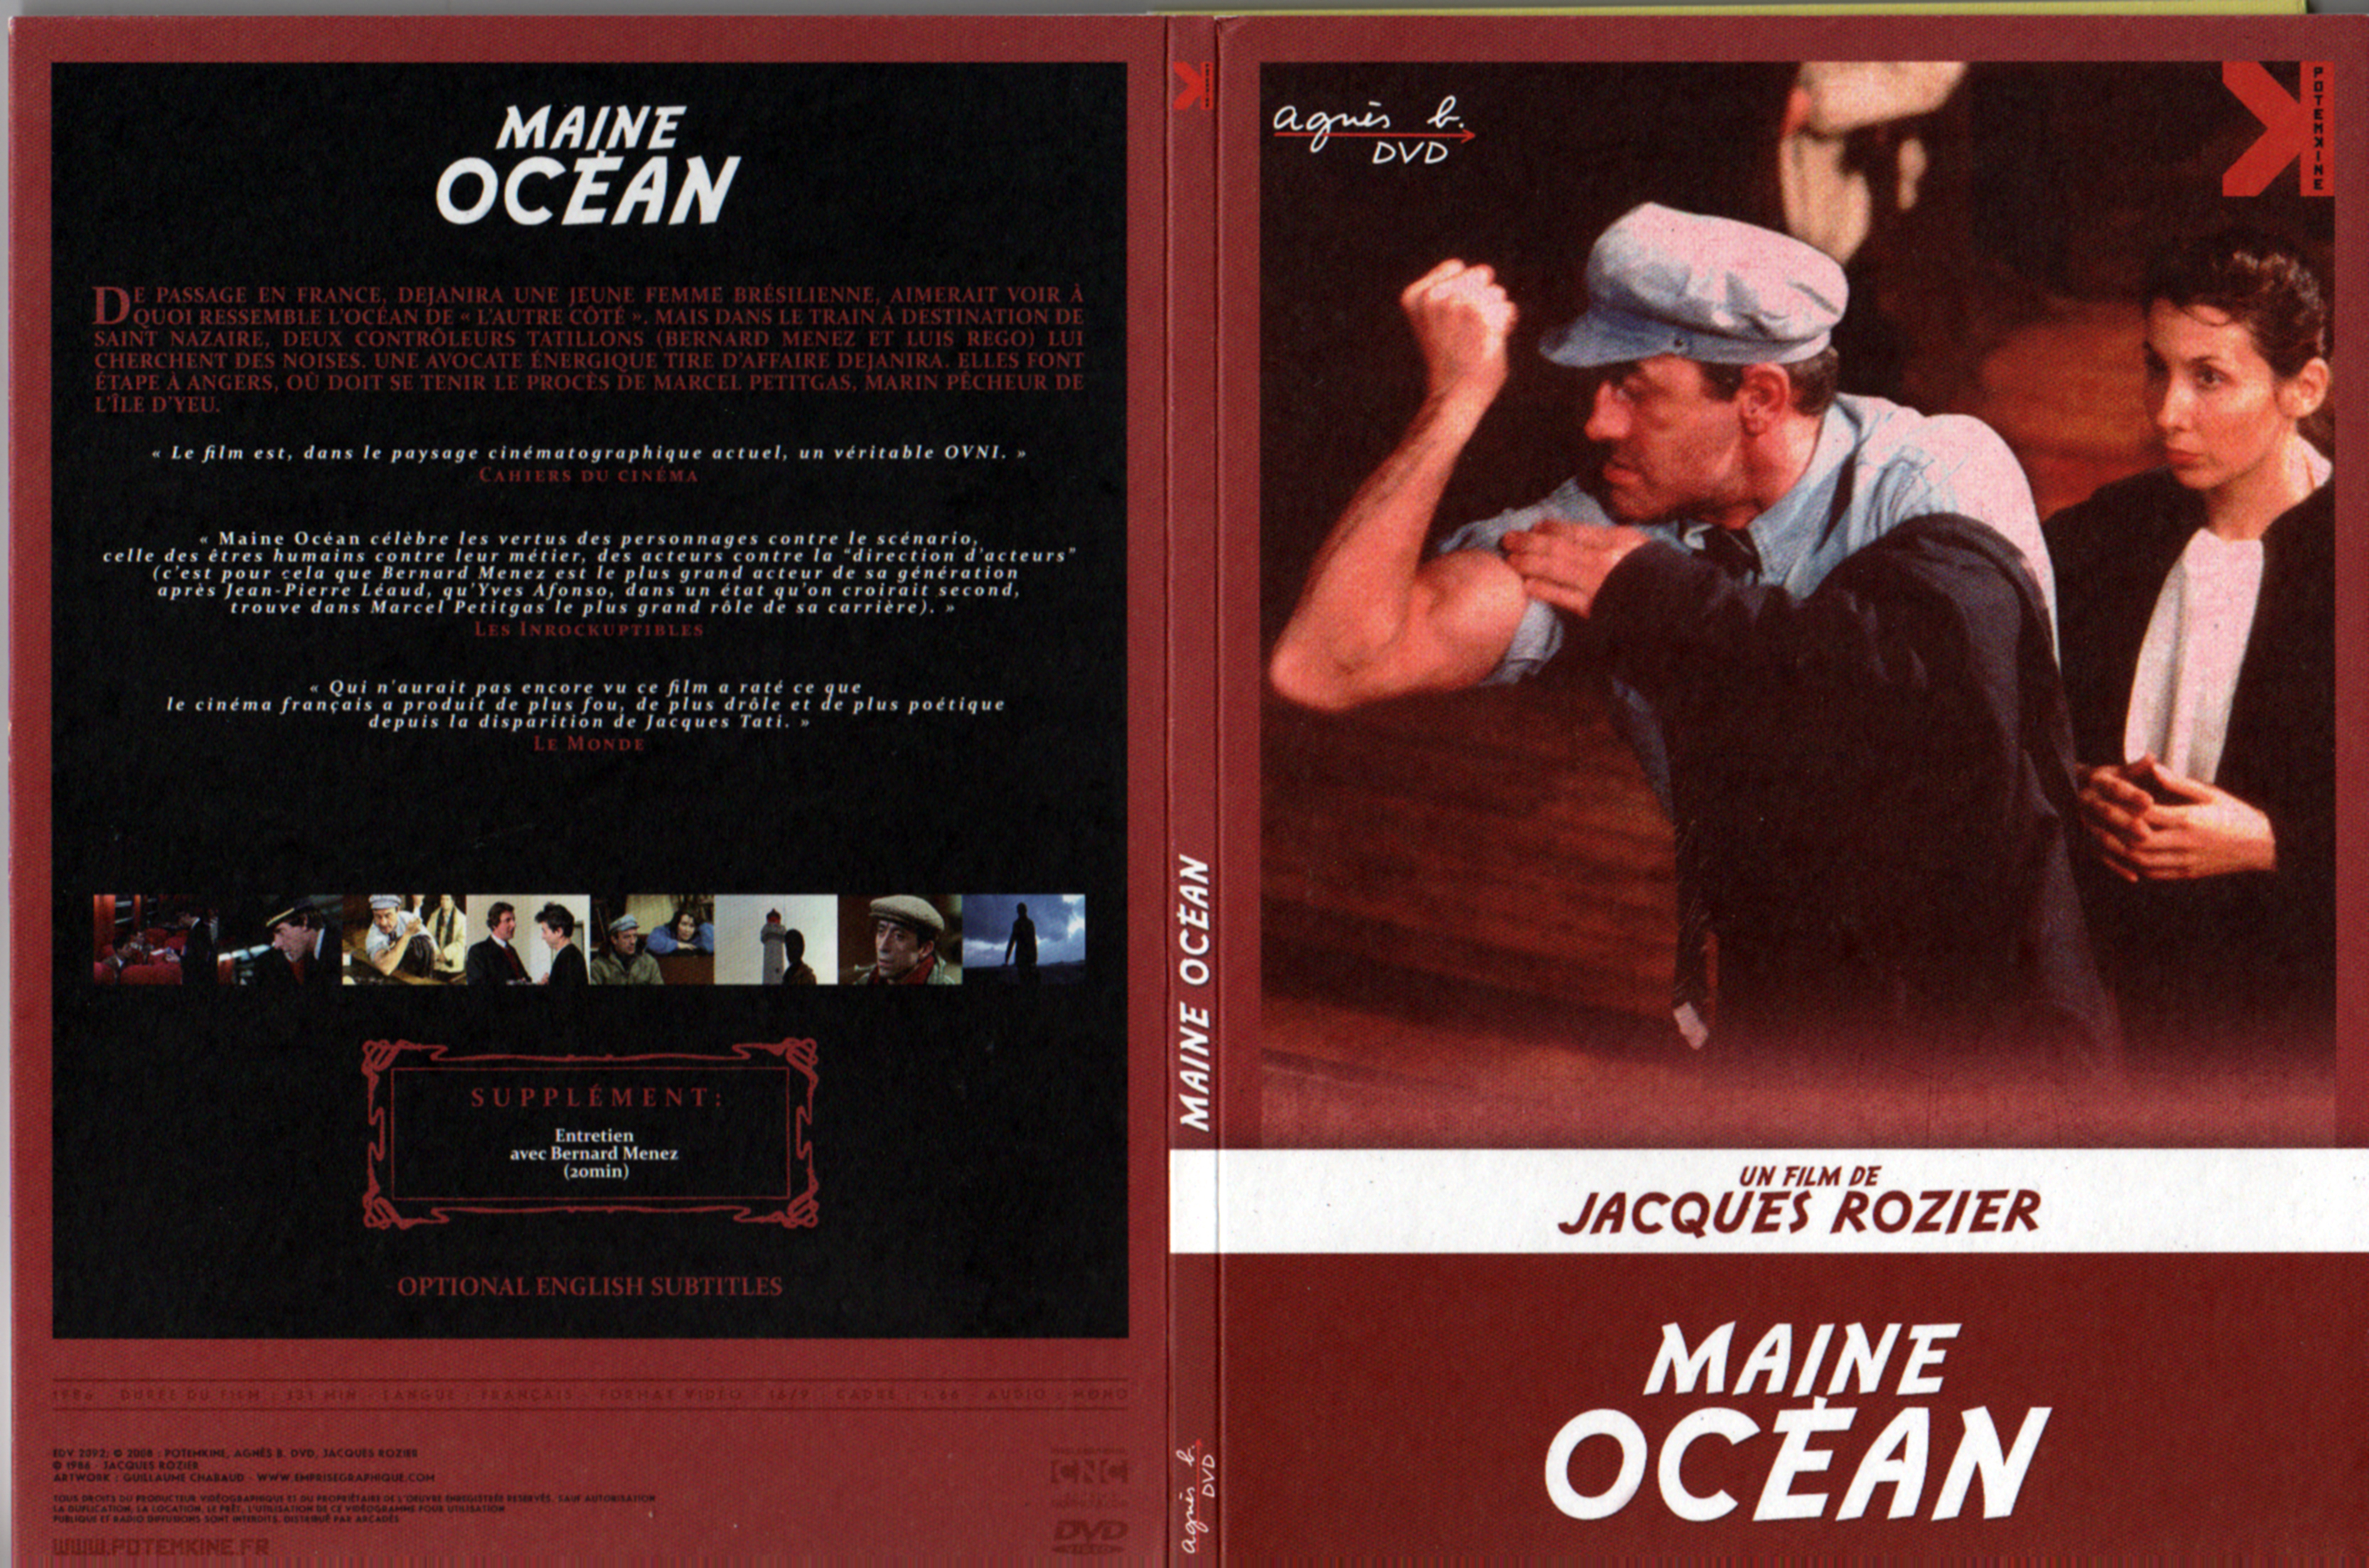 Jaquette DVD Maine ocan